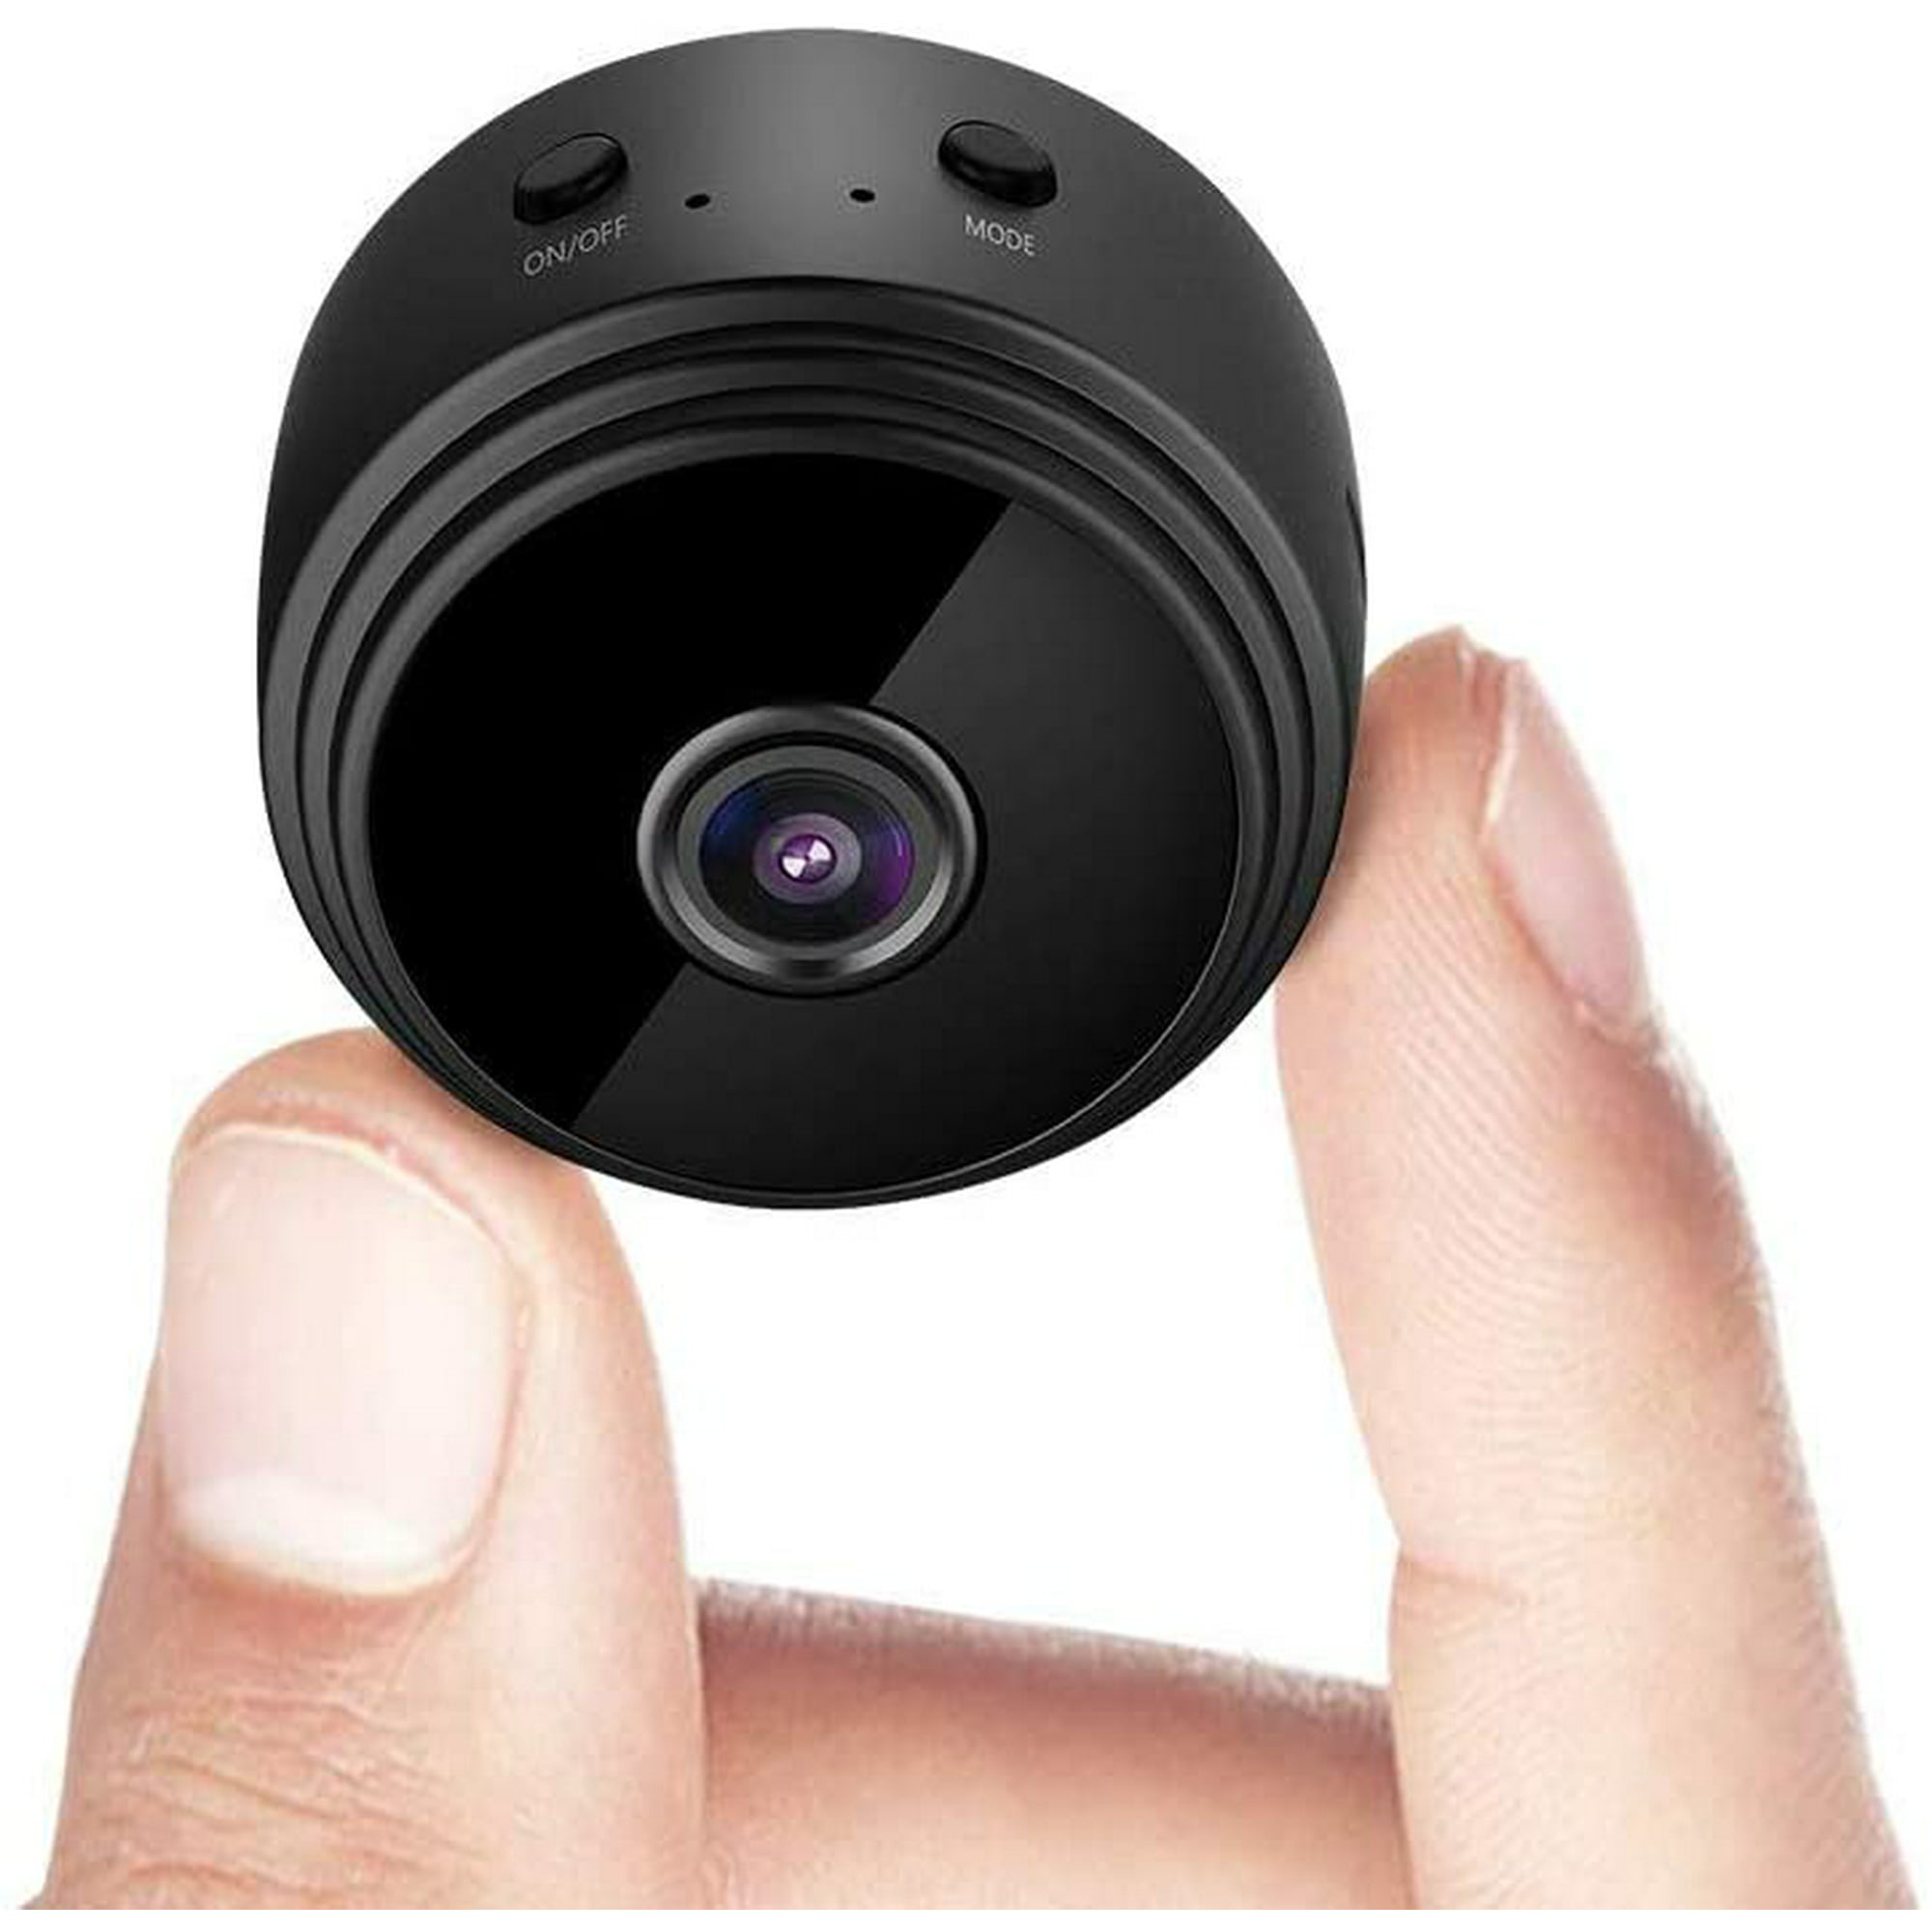  Cámara espía oculta, 1080P WiFi Mini cámara portátil  inalámbrica de seguridad con 2 lentes detección de movimiento, visión  nocturna, visión remota para vigilancia del hogar, grabadora de video,  cámara de niñera